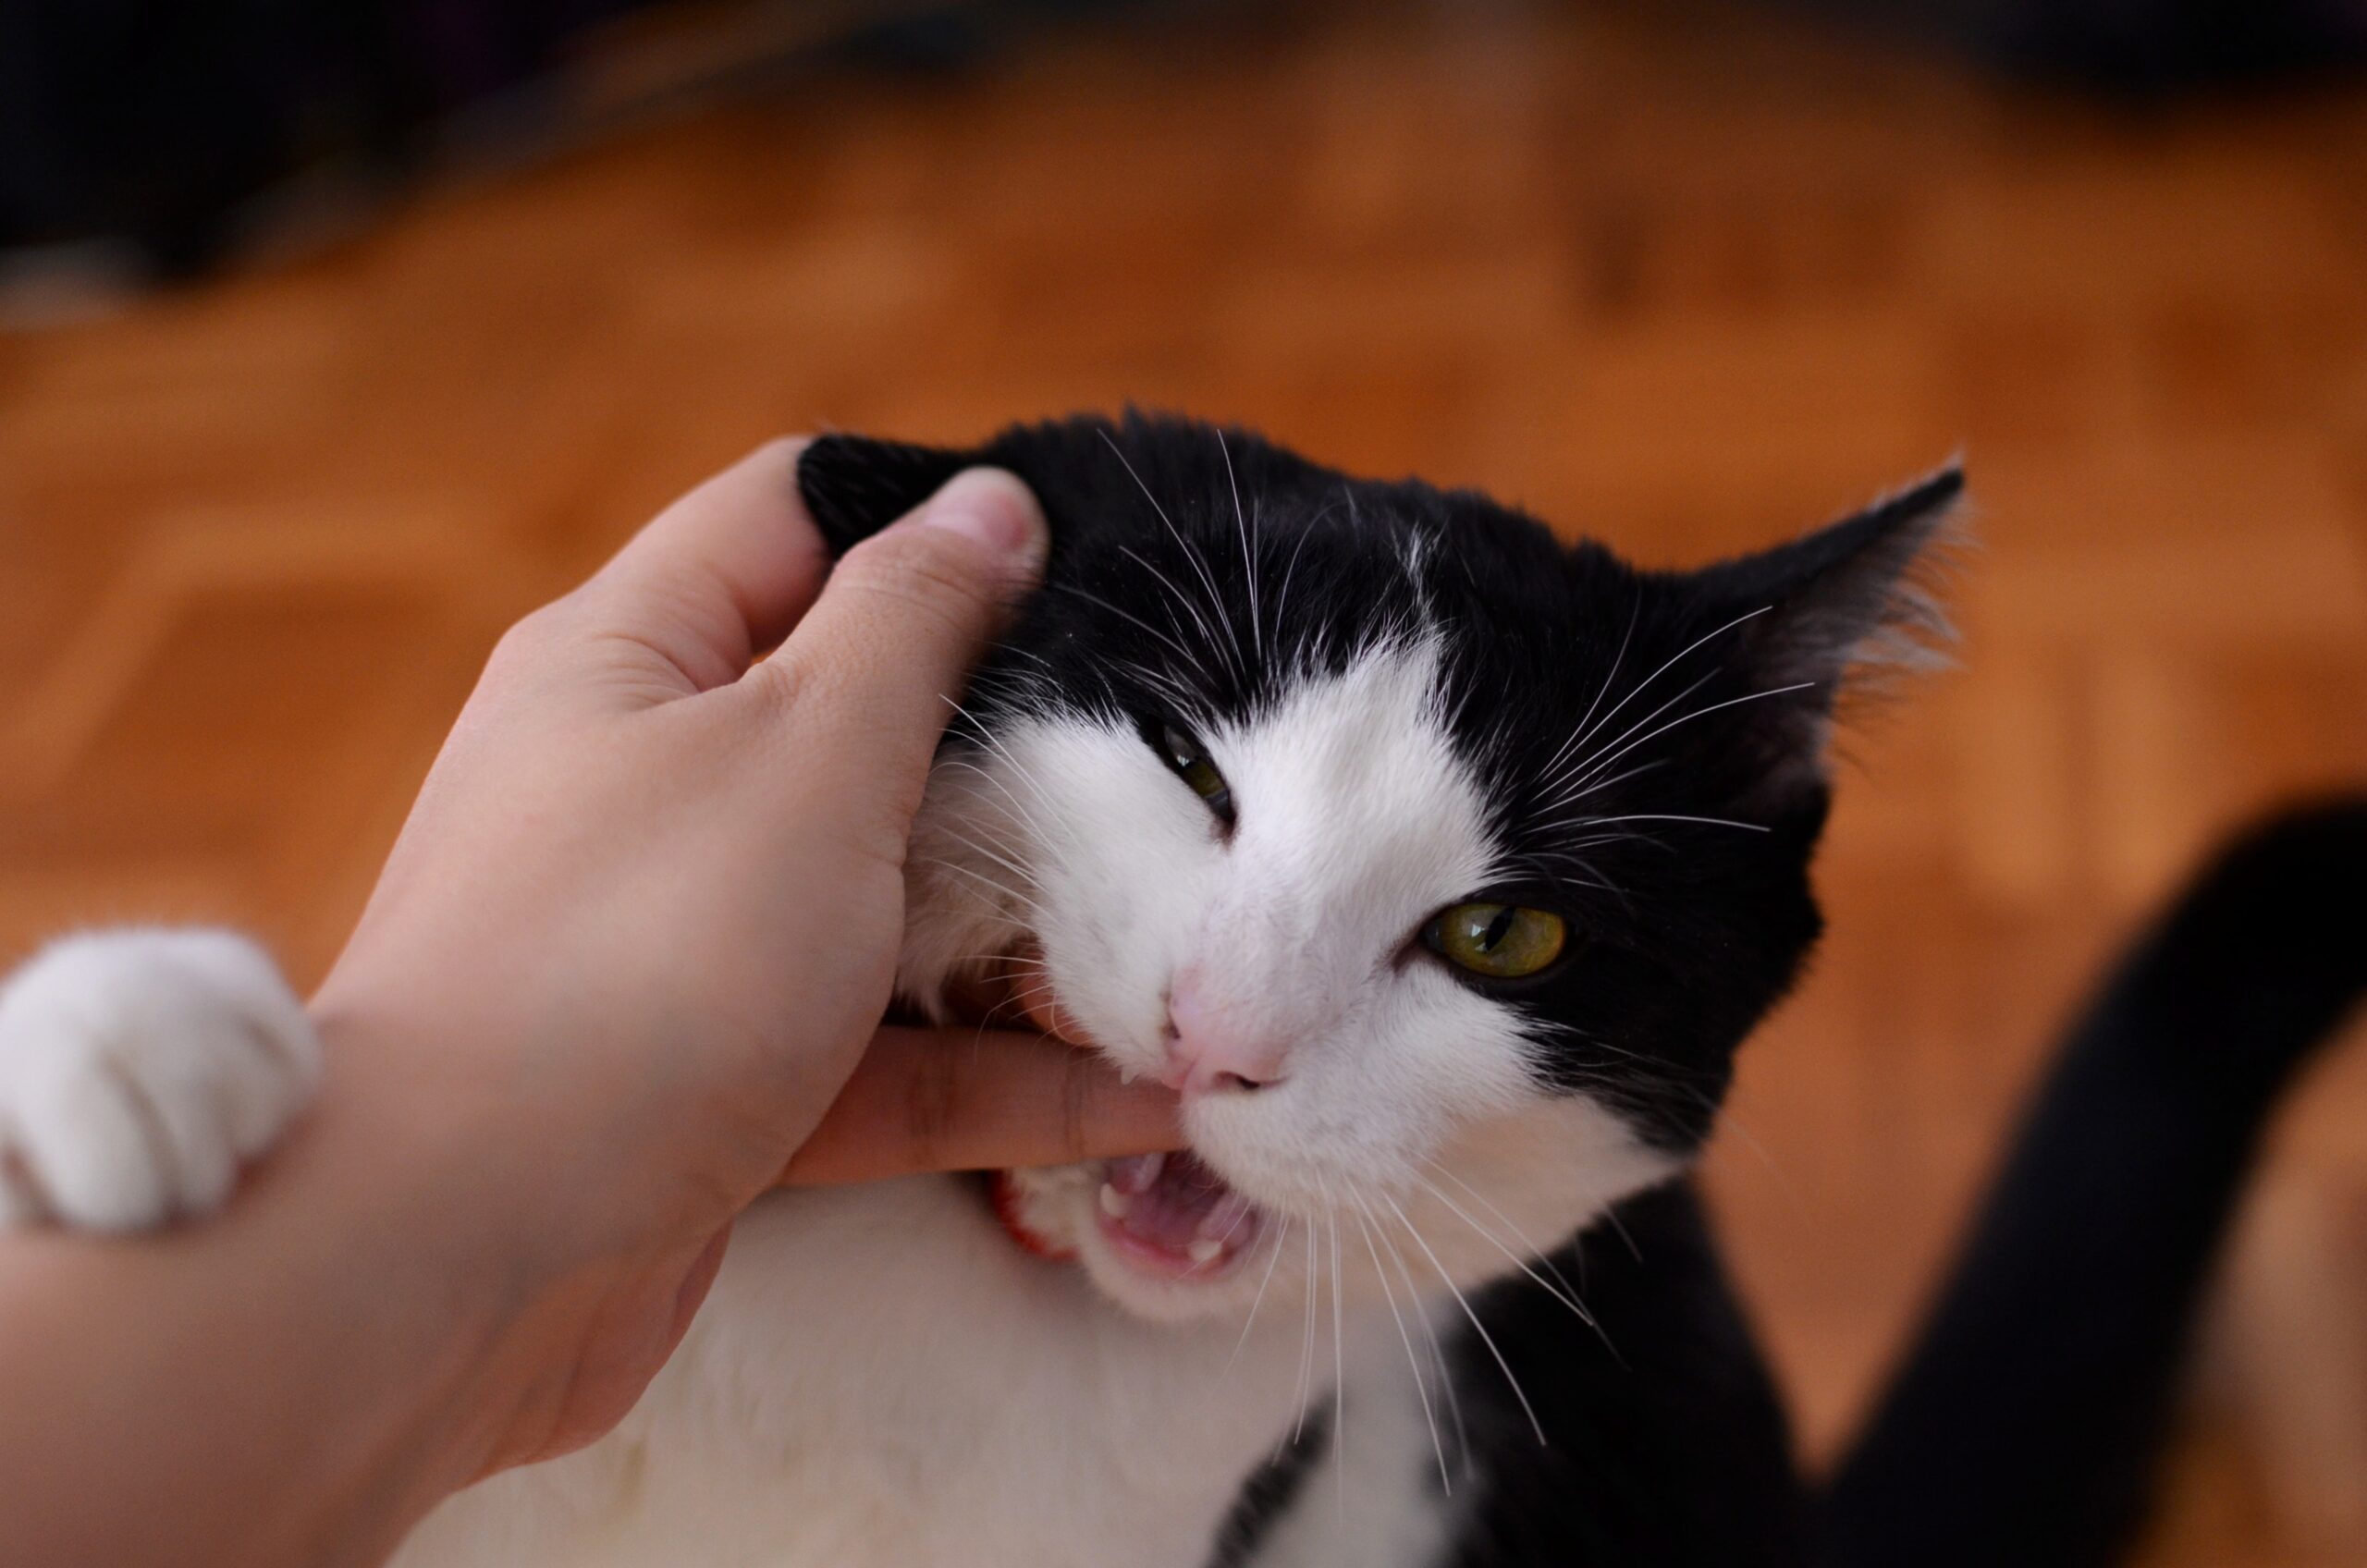 cat bites hand